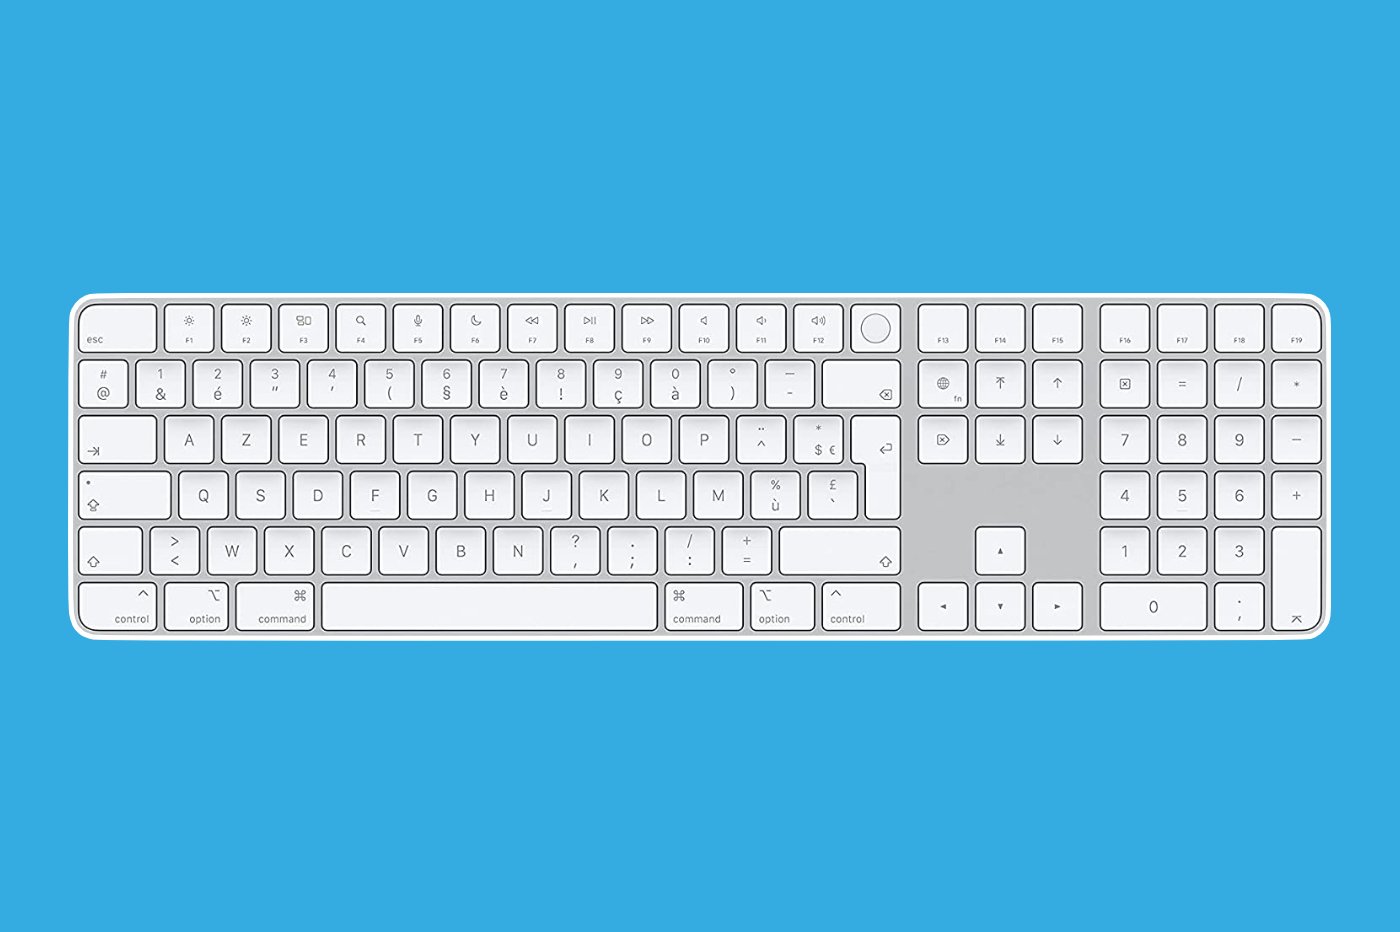 Réinstaller un Mac sans clavier Apple – Le journal du lapin